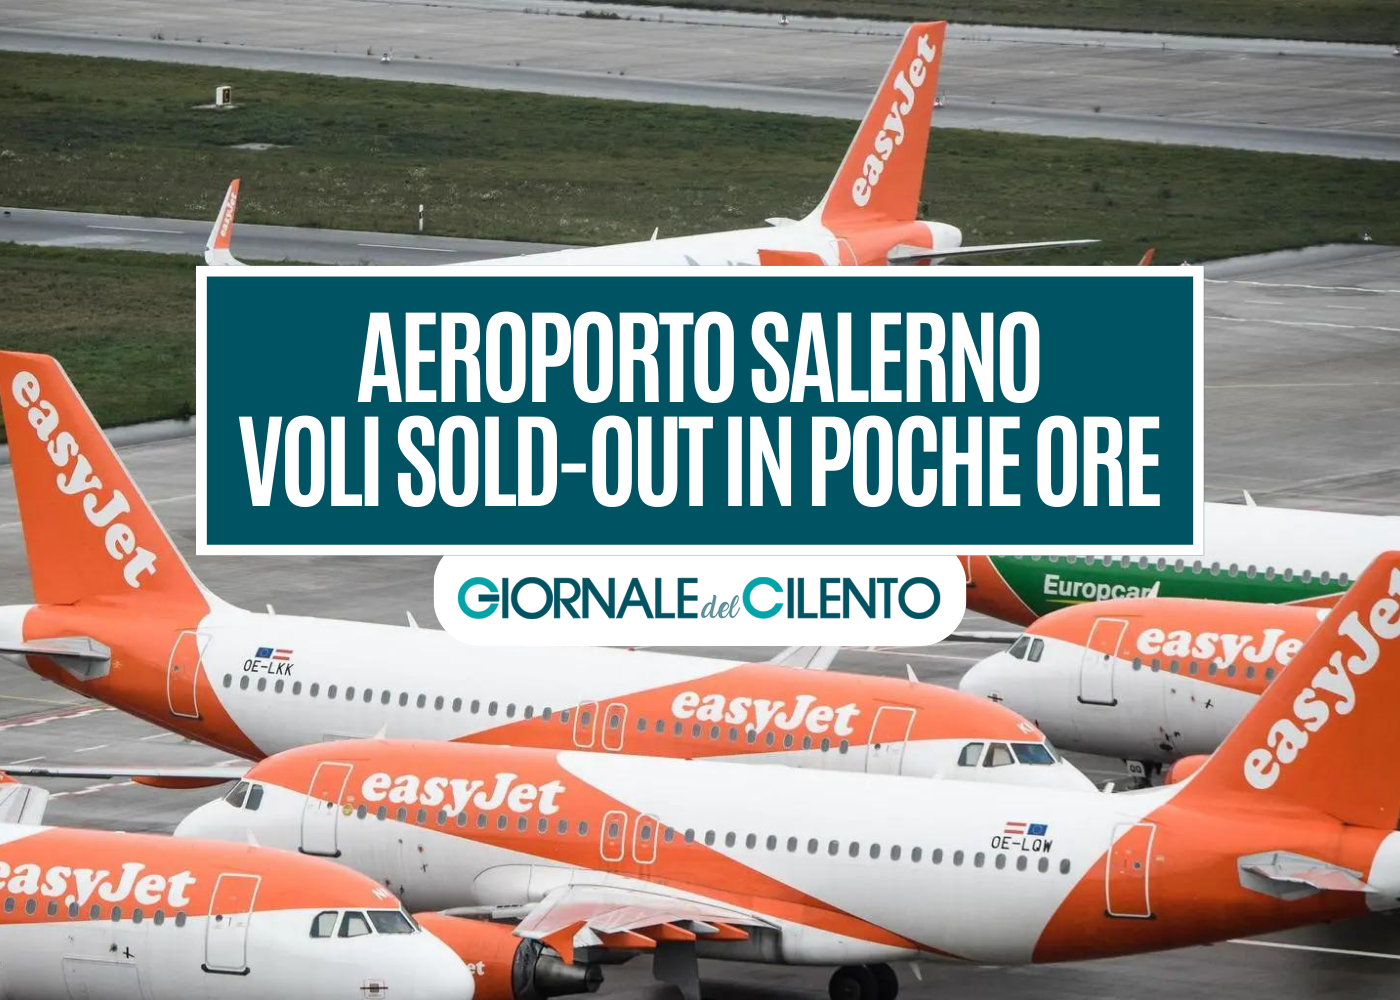 Aeroporto Salerno: voli easyJet sold out in poche ore